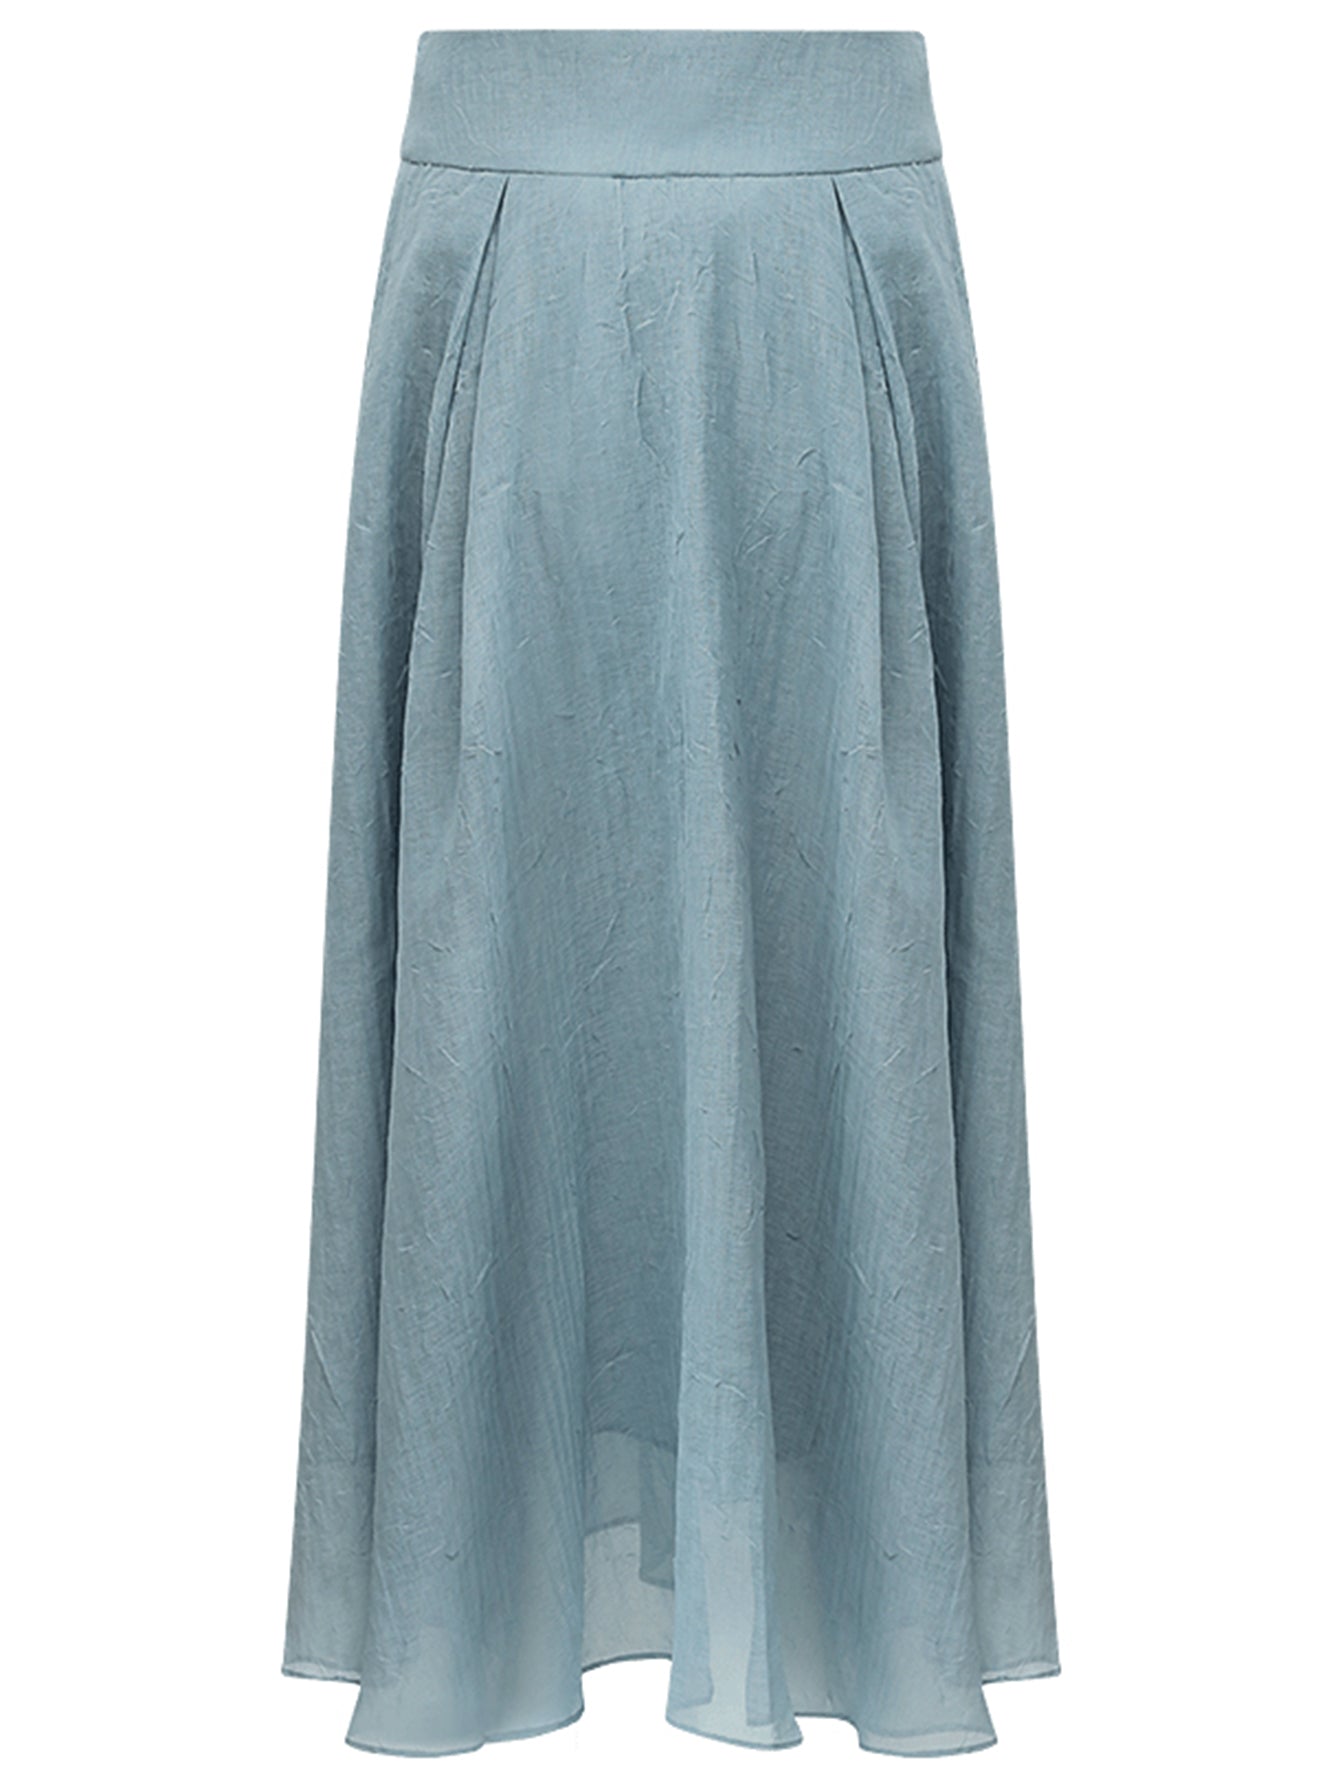 aesthetic-full-length-airy-multi-layered-umbrella-skirt_all_blue_4.jpg